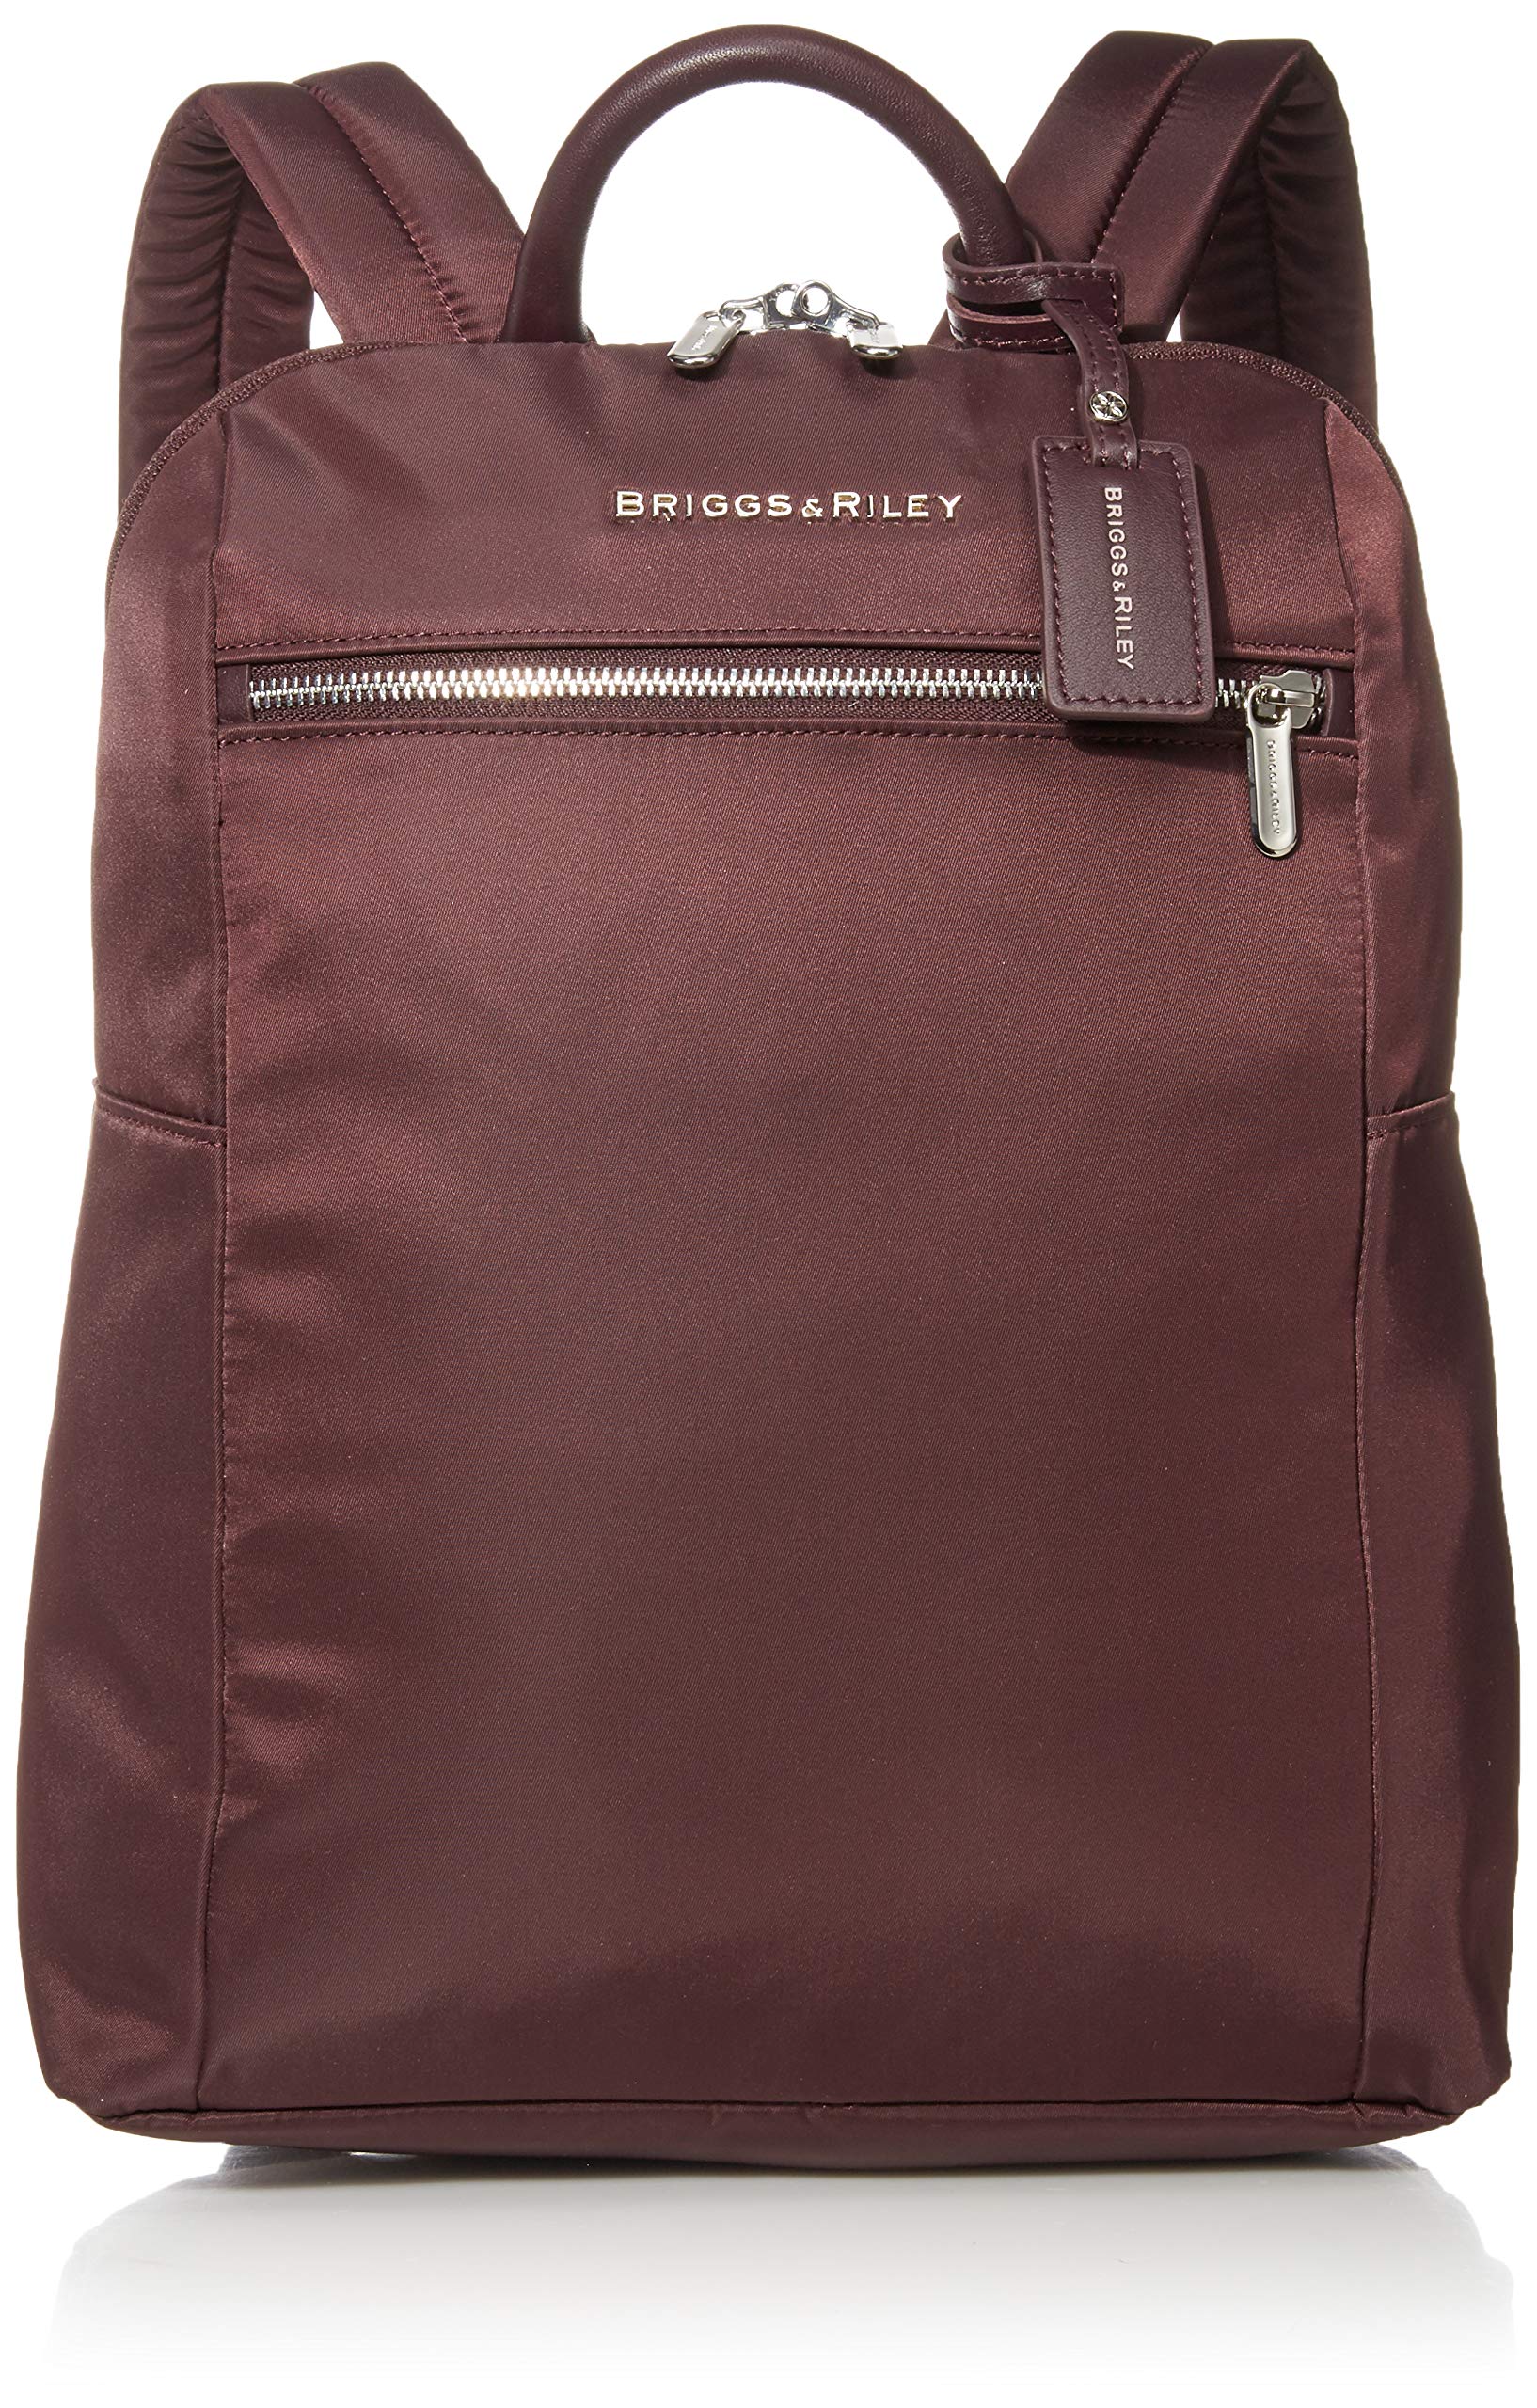 Briggs & Riley Unisex's Rhapsody Slim Backpack, 36 cm, 11.6 Liters